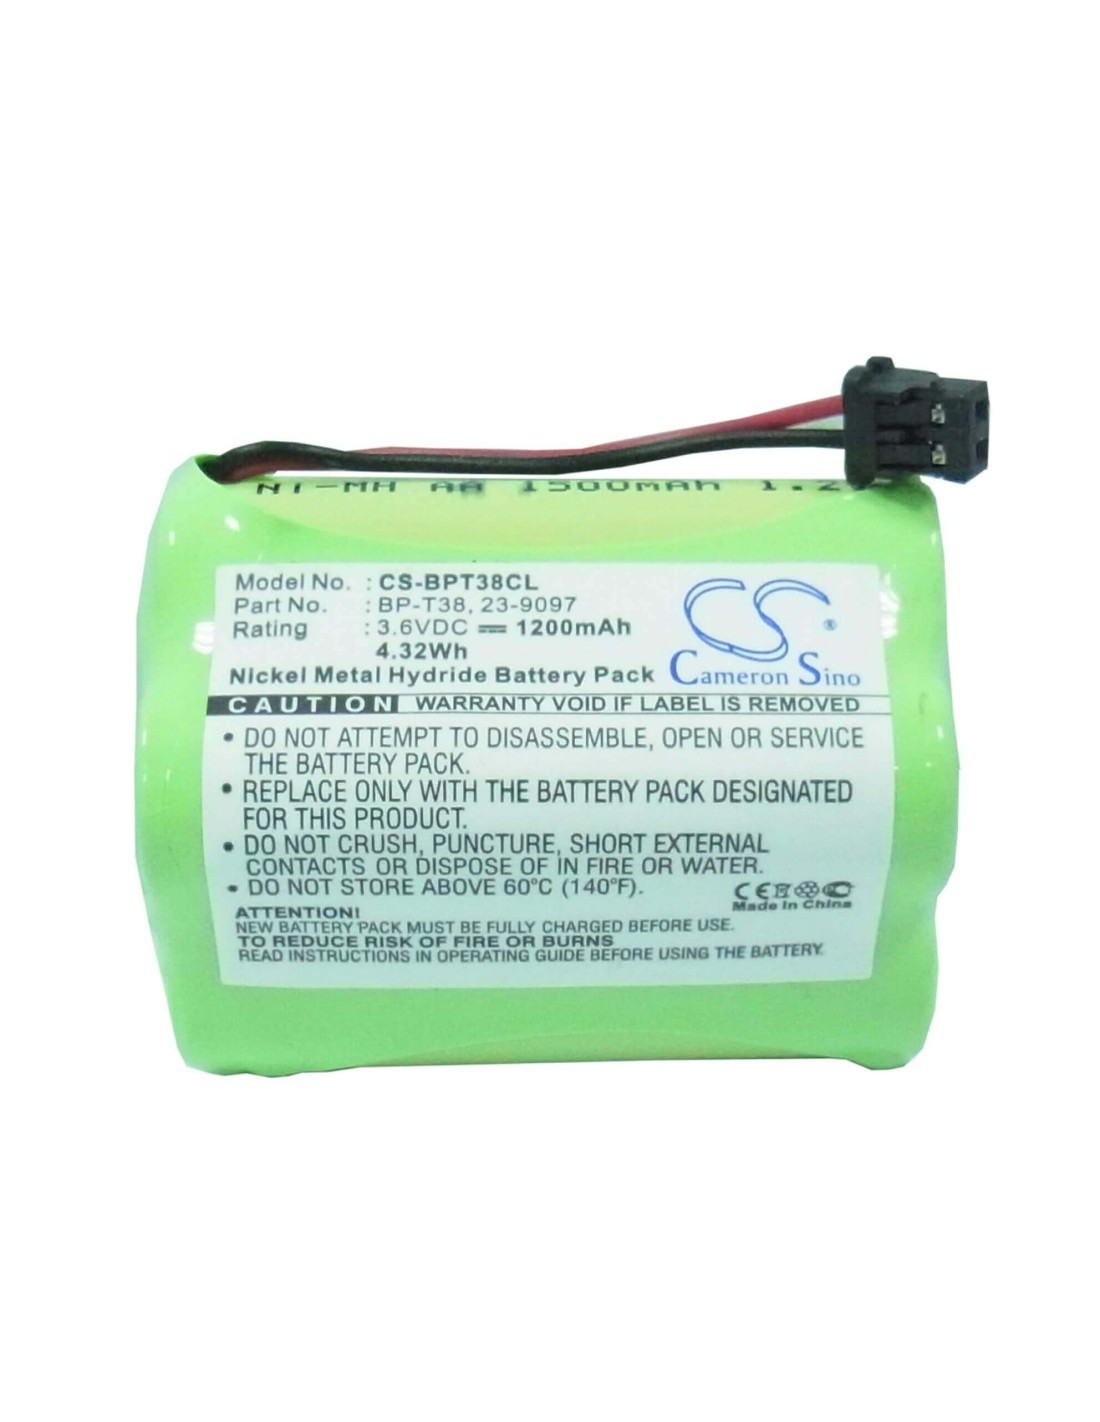 Battery for Sony, Spp-a2770, Spp-a2780, Spp-h270, Spp-h273, 3.6V, 1200mAh - 4.32Wh